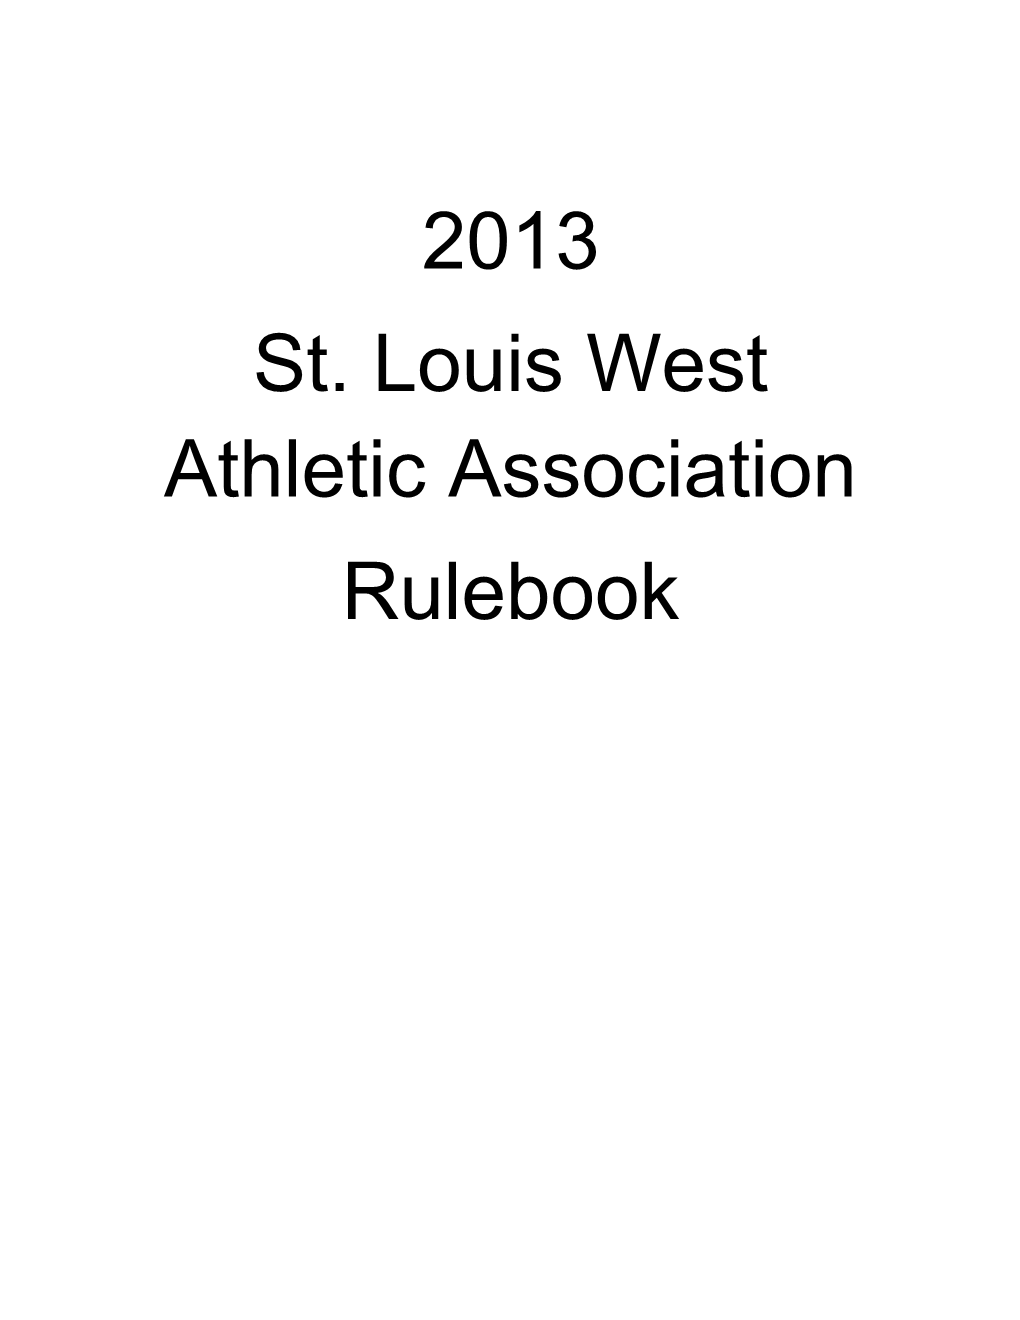 St. Louis West Athletic Association